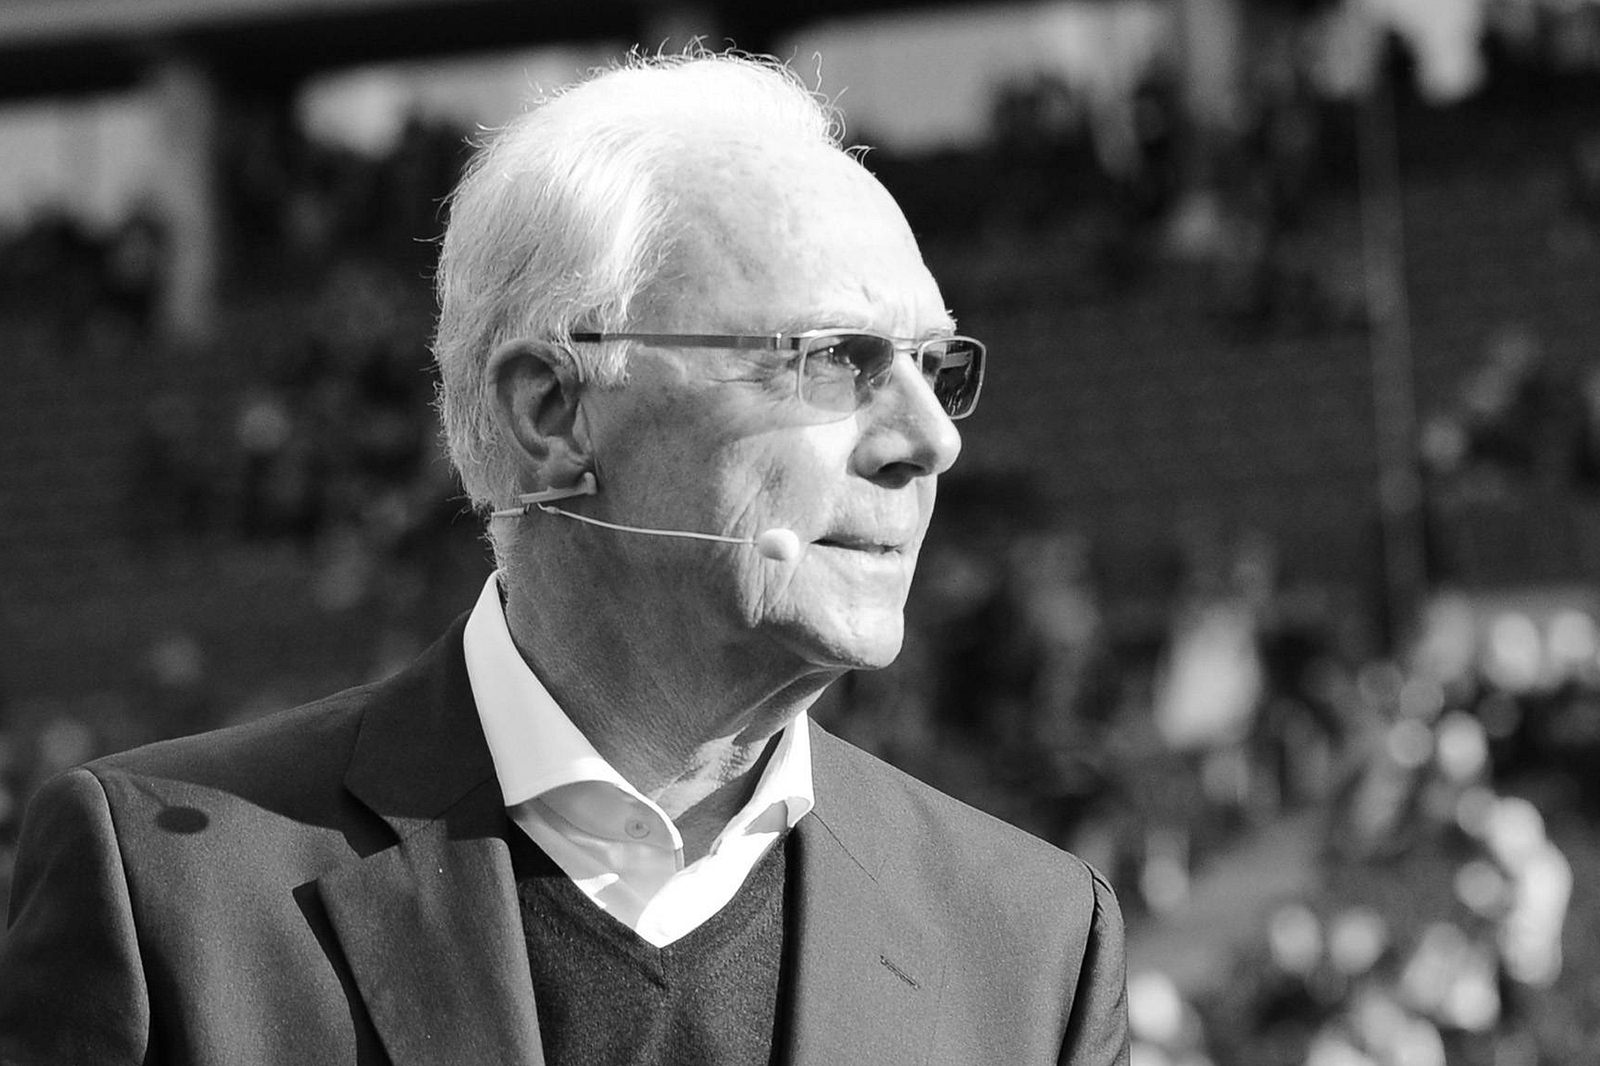 Franz Beckenbauer Das Ist Sein Letztes Offizielles Foto Wunderweib